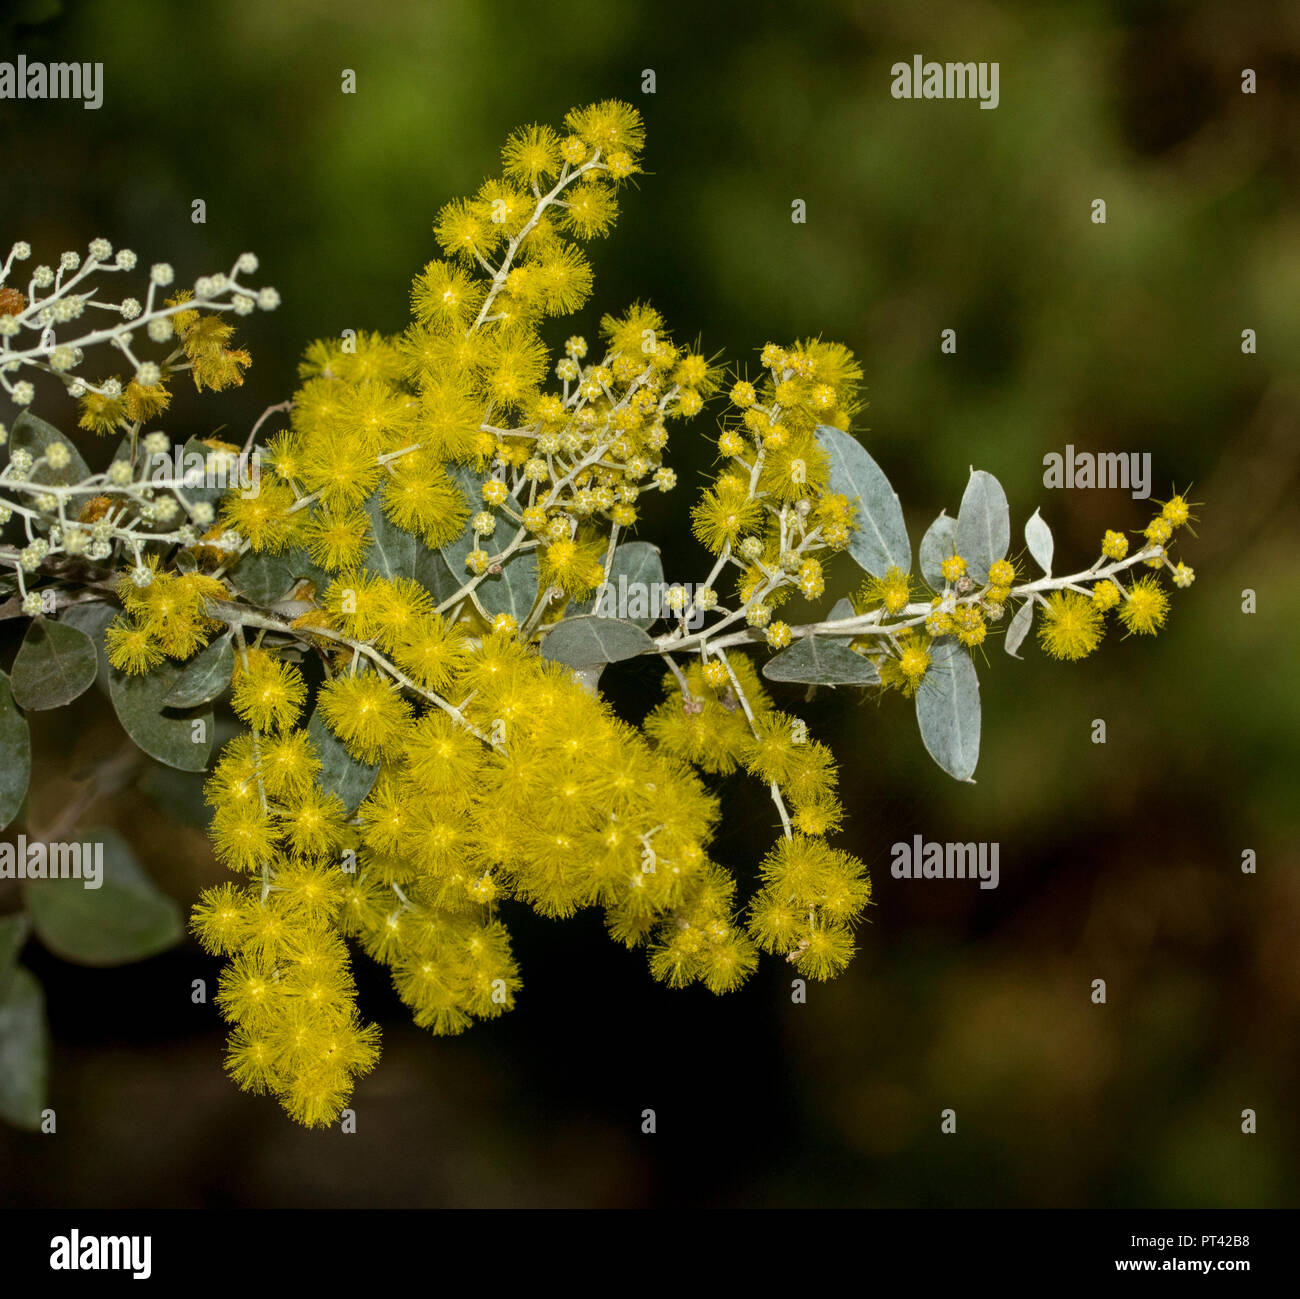 Fiori selvatici Australiano, brillanti fiori gialli e blu grigio foglie di Acacia podalyrifolia, Mount Morgan / Queensland graticcio di argento, dk sfondo verde Foto Stock